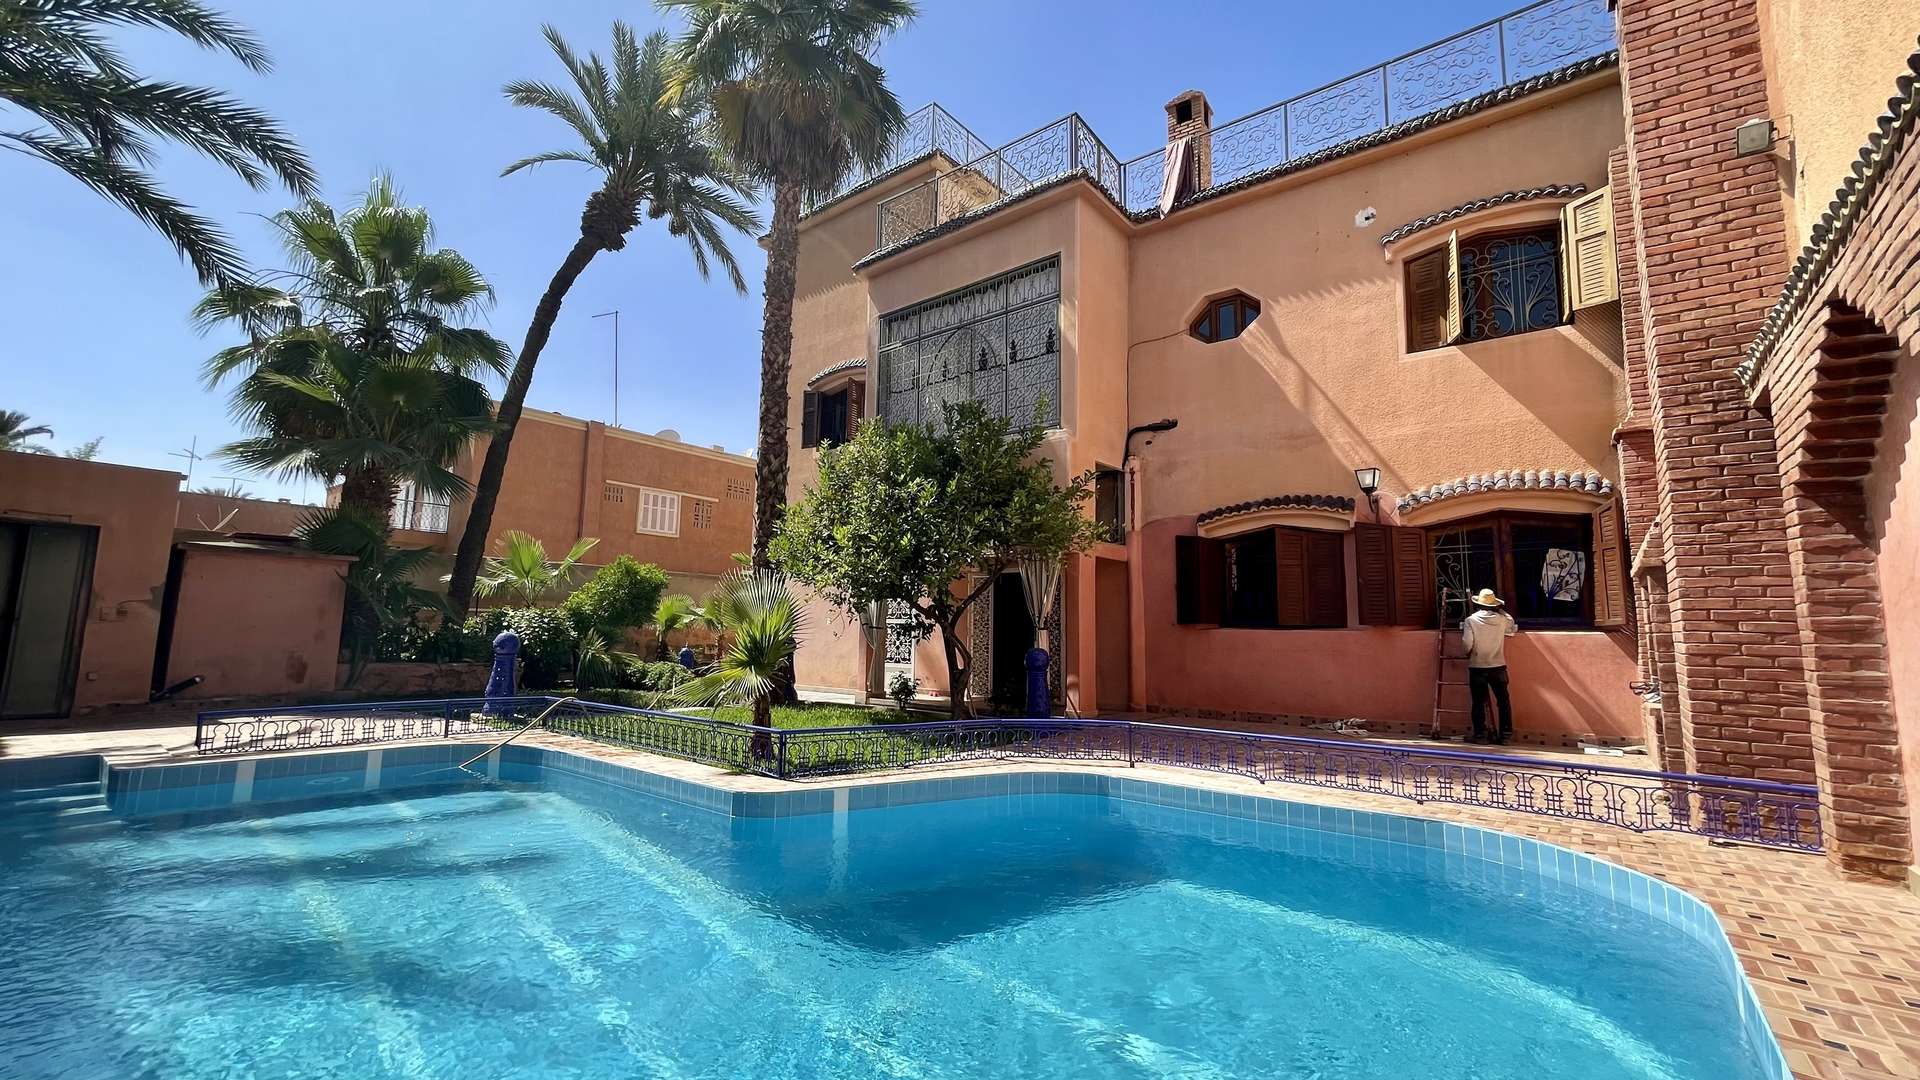 Vente,Villa,Très belle maison de ville avec piscine dans une rue très calme bien située dans le quartier de Semlalia ,Marrakech,Semlalia